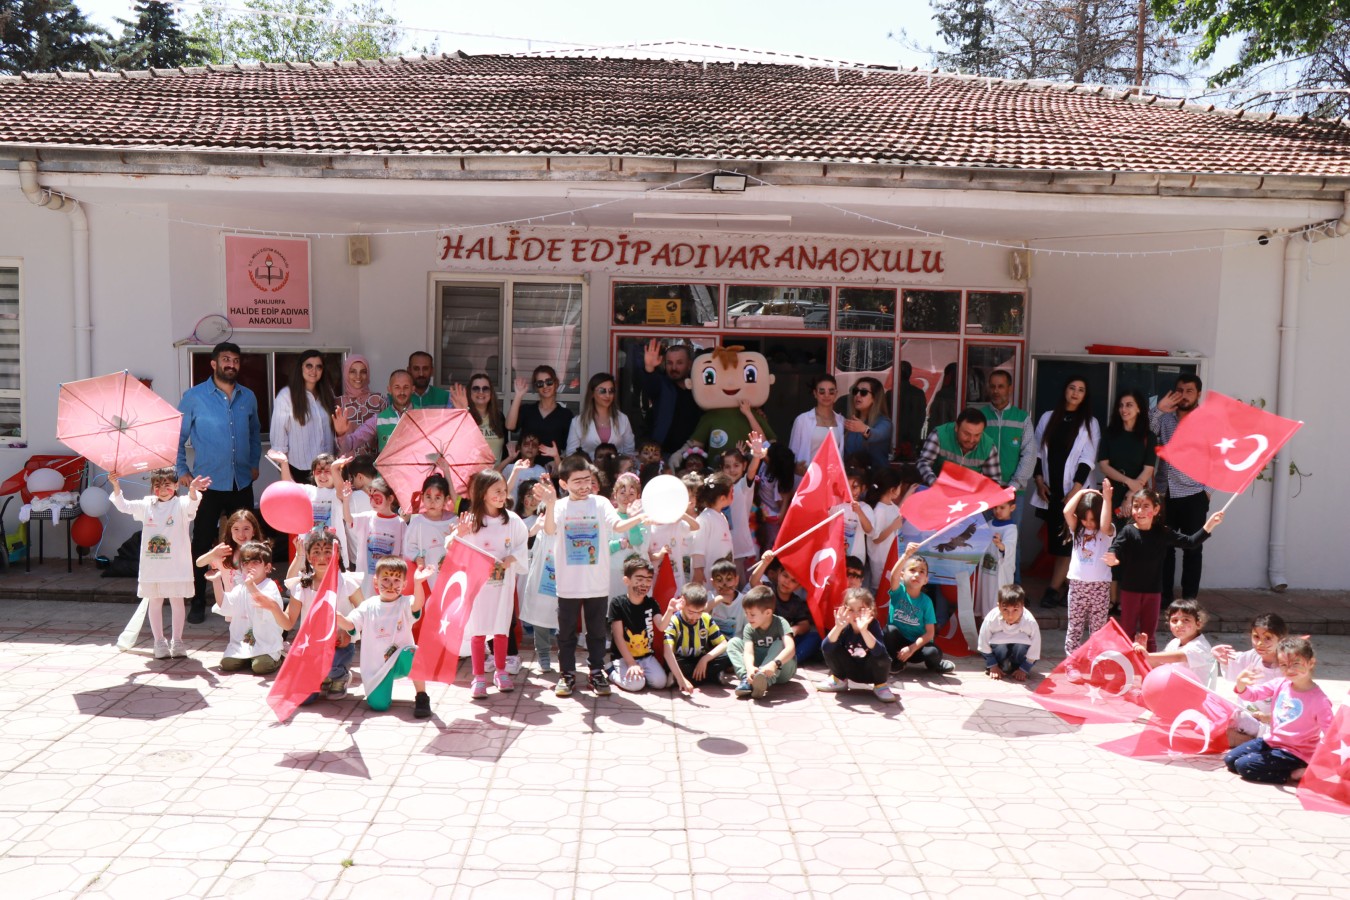 Haliliye Belediyesi, 23 Nisan etkinlikleri ile çocukları eğlendirdi;